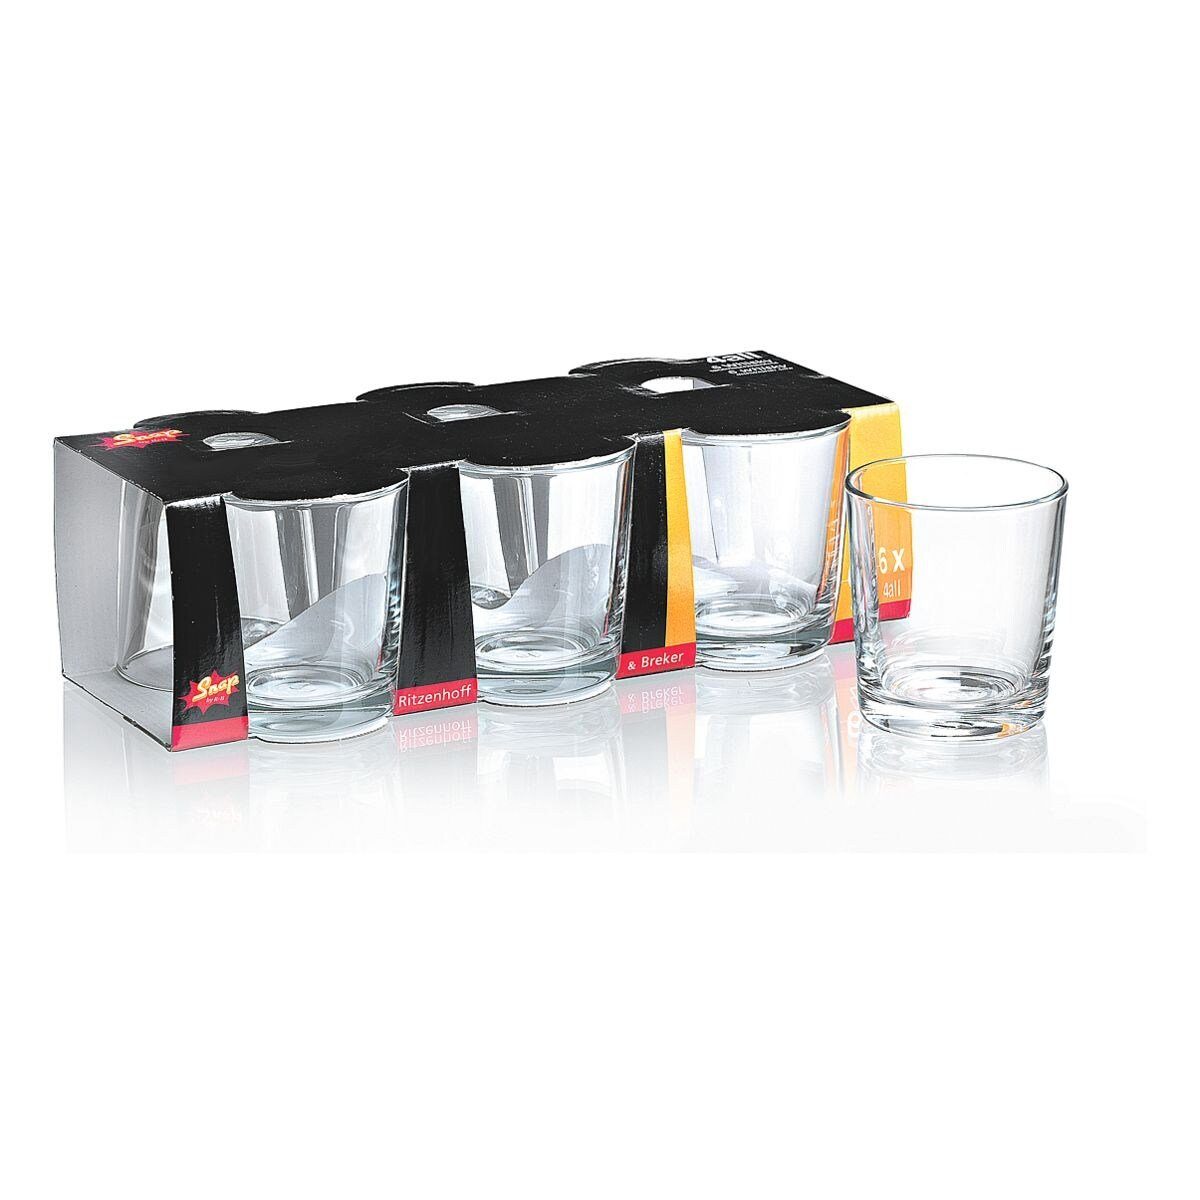 Ritzenhoff & Breker Whiskyglas 4ALL, Glas, 250 ml, Trinkglas, spülmaschinengeeignet